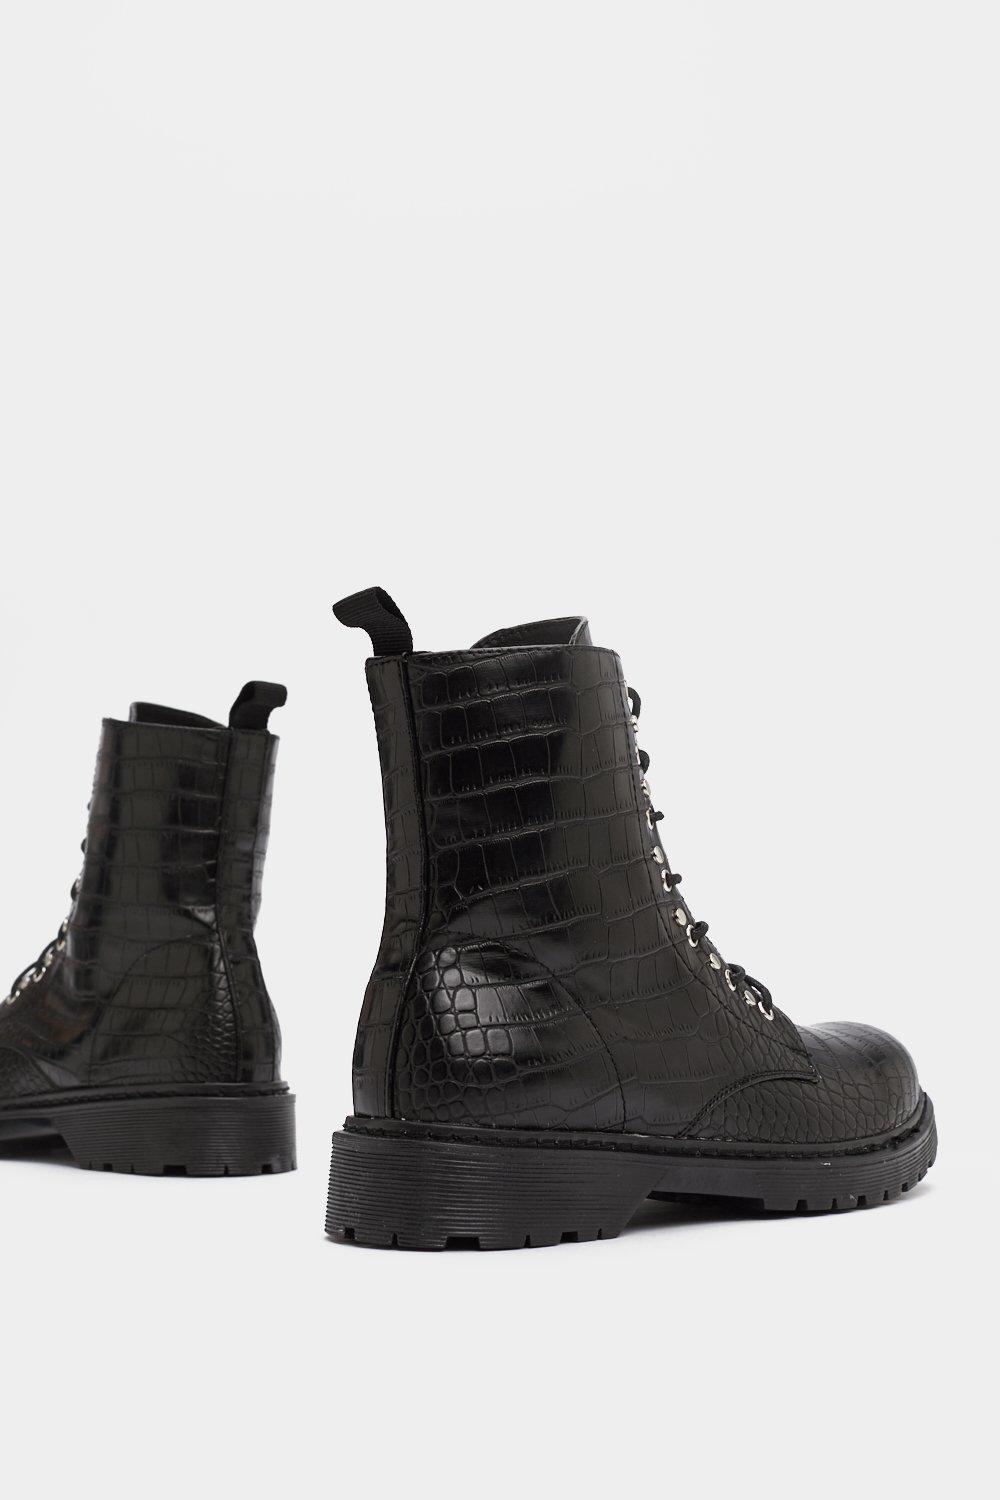 crocs black boots